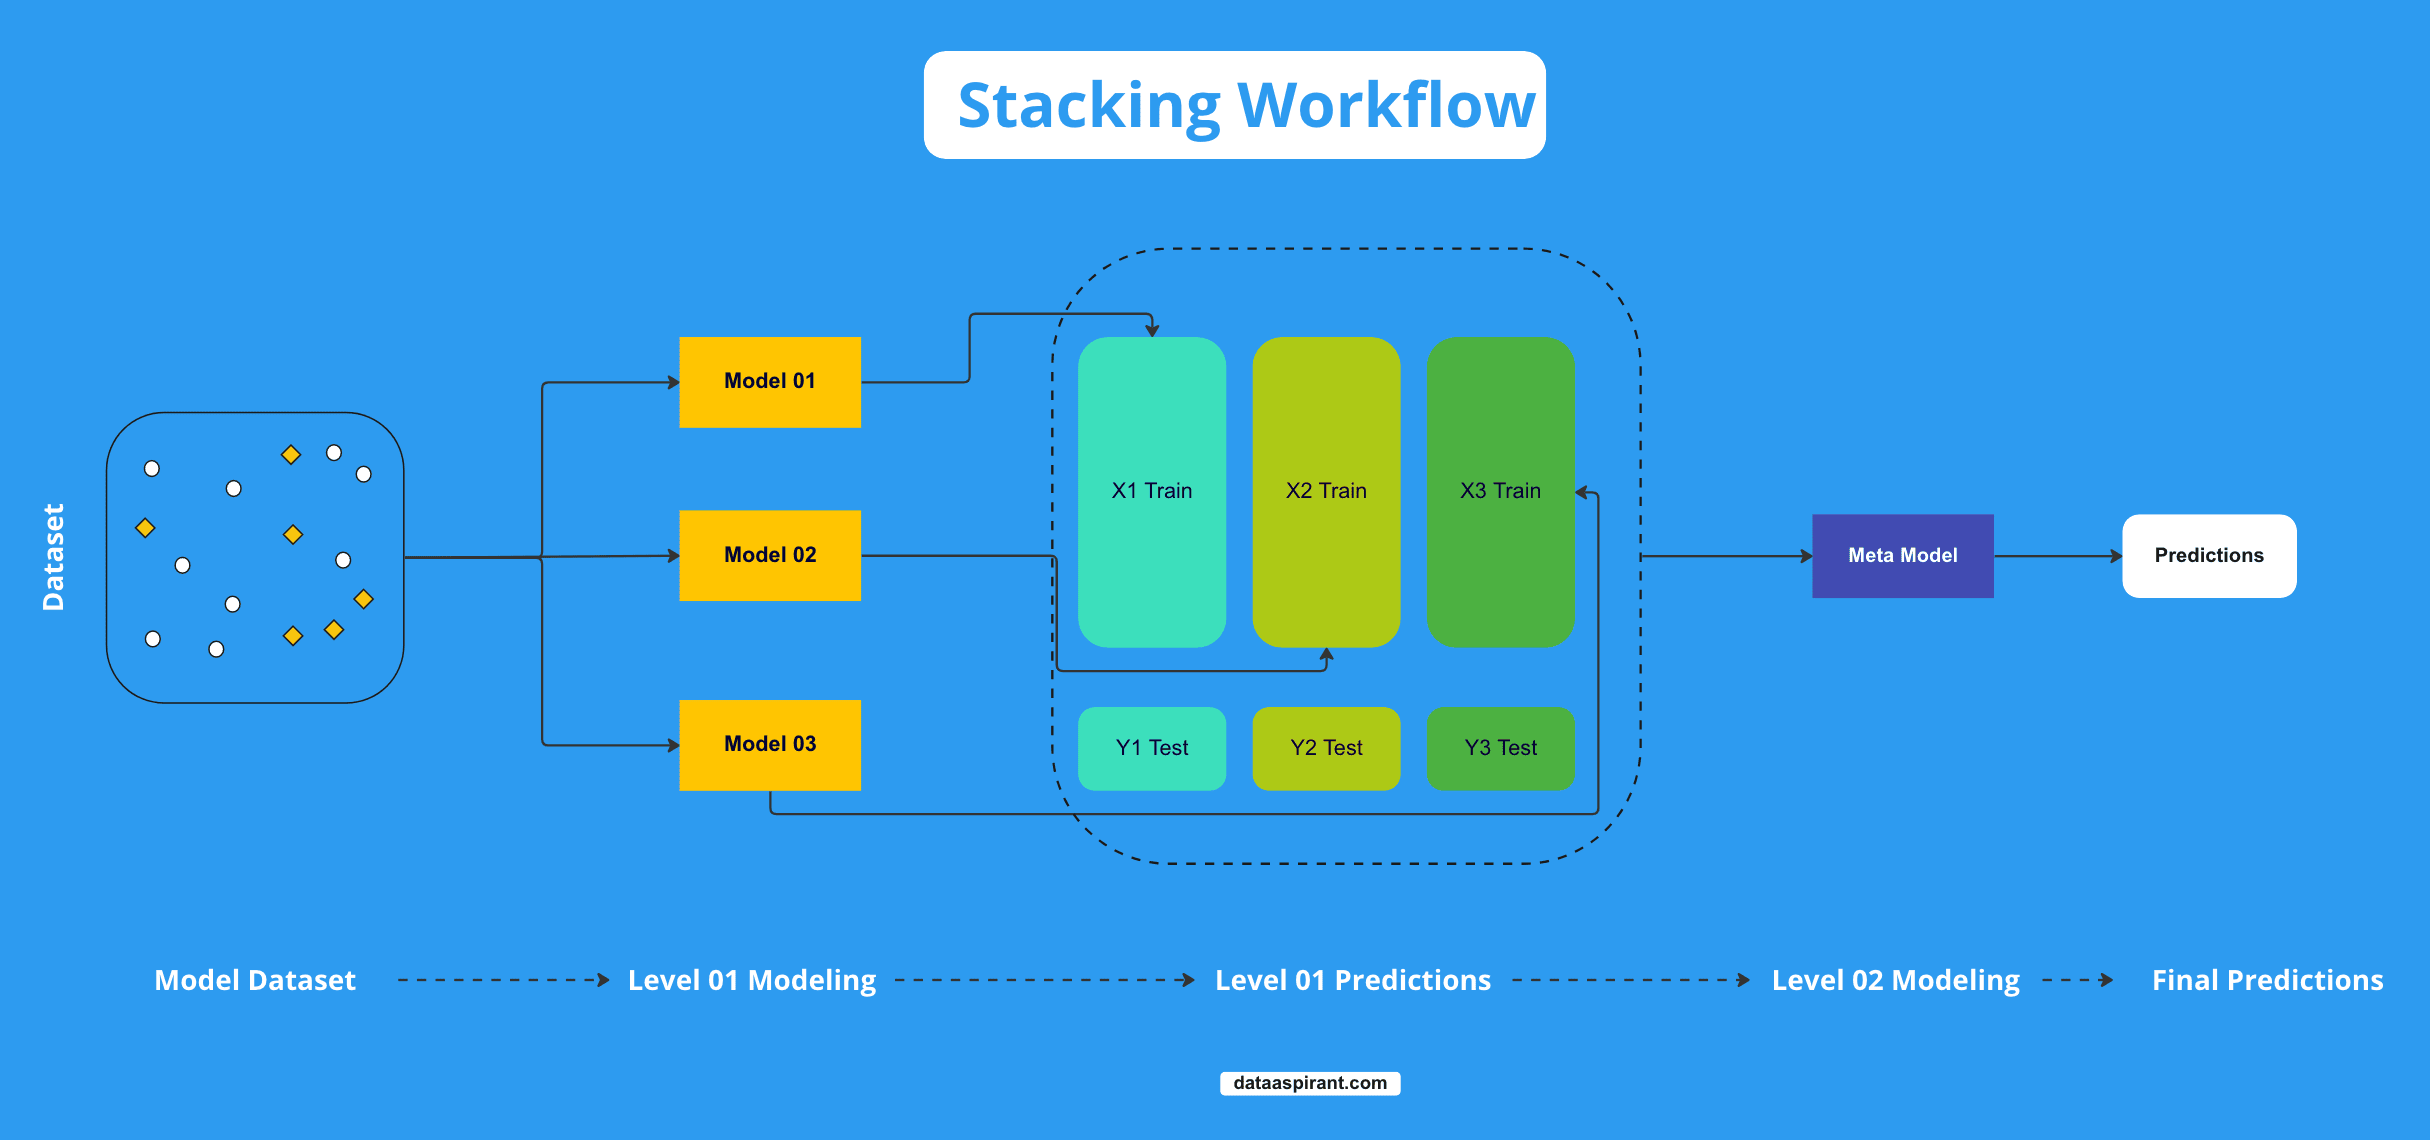 Stacking Workflow